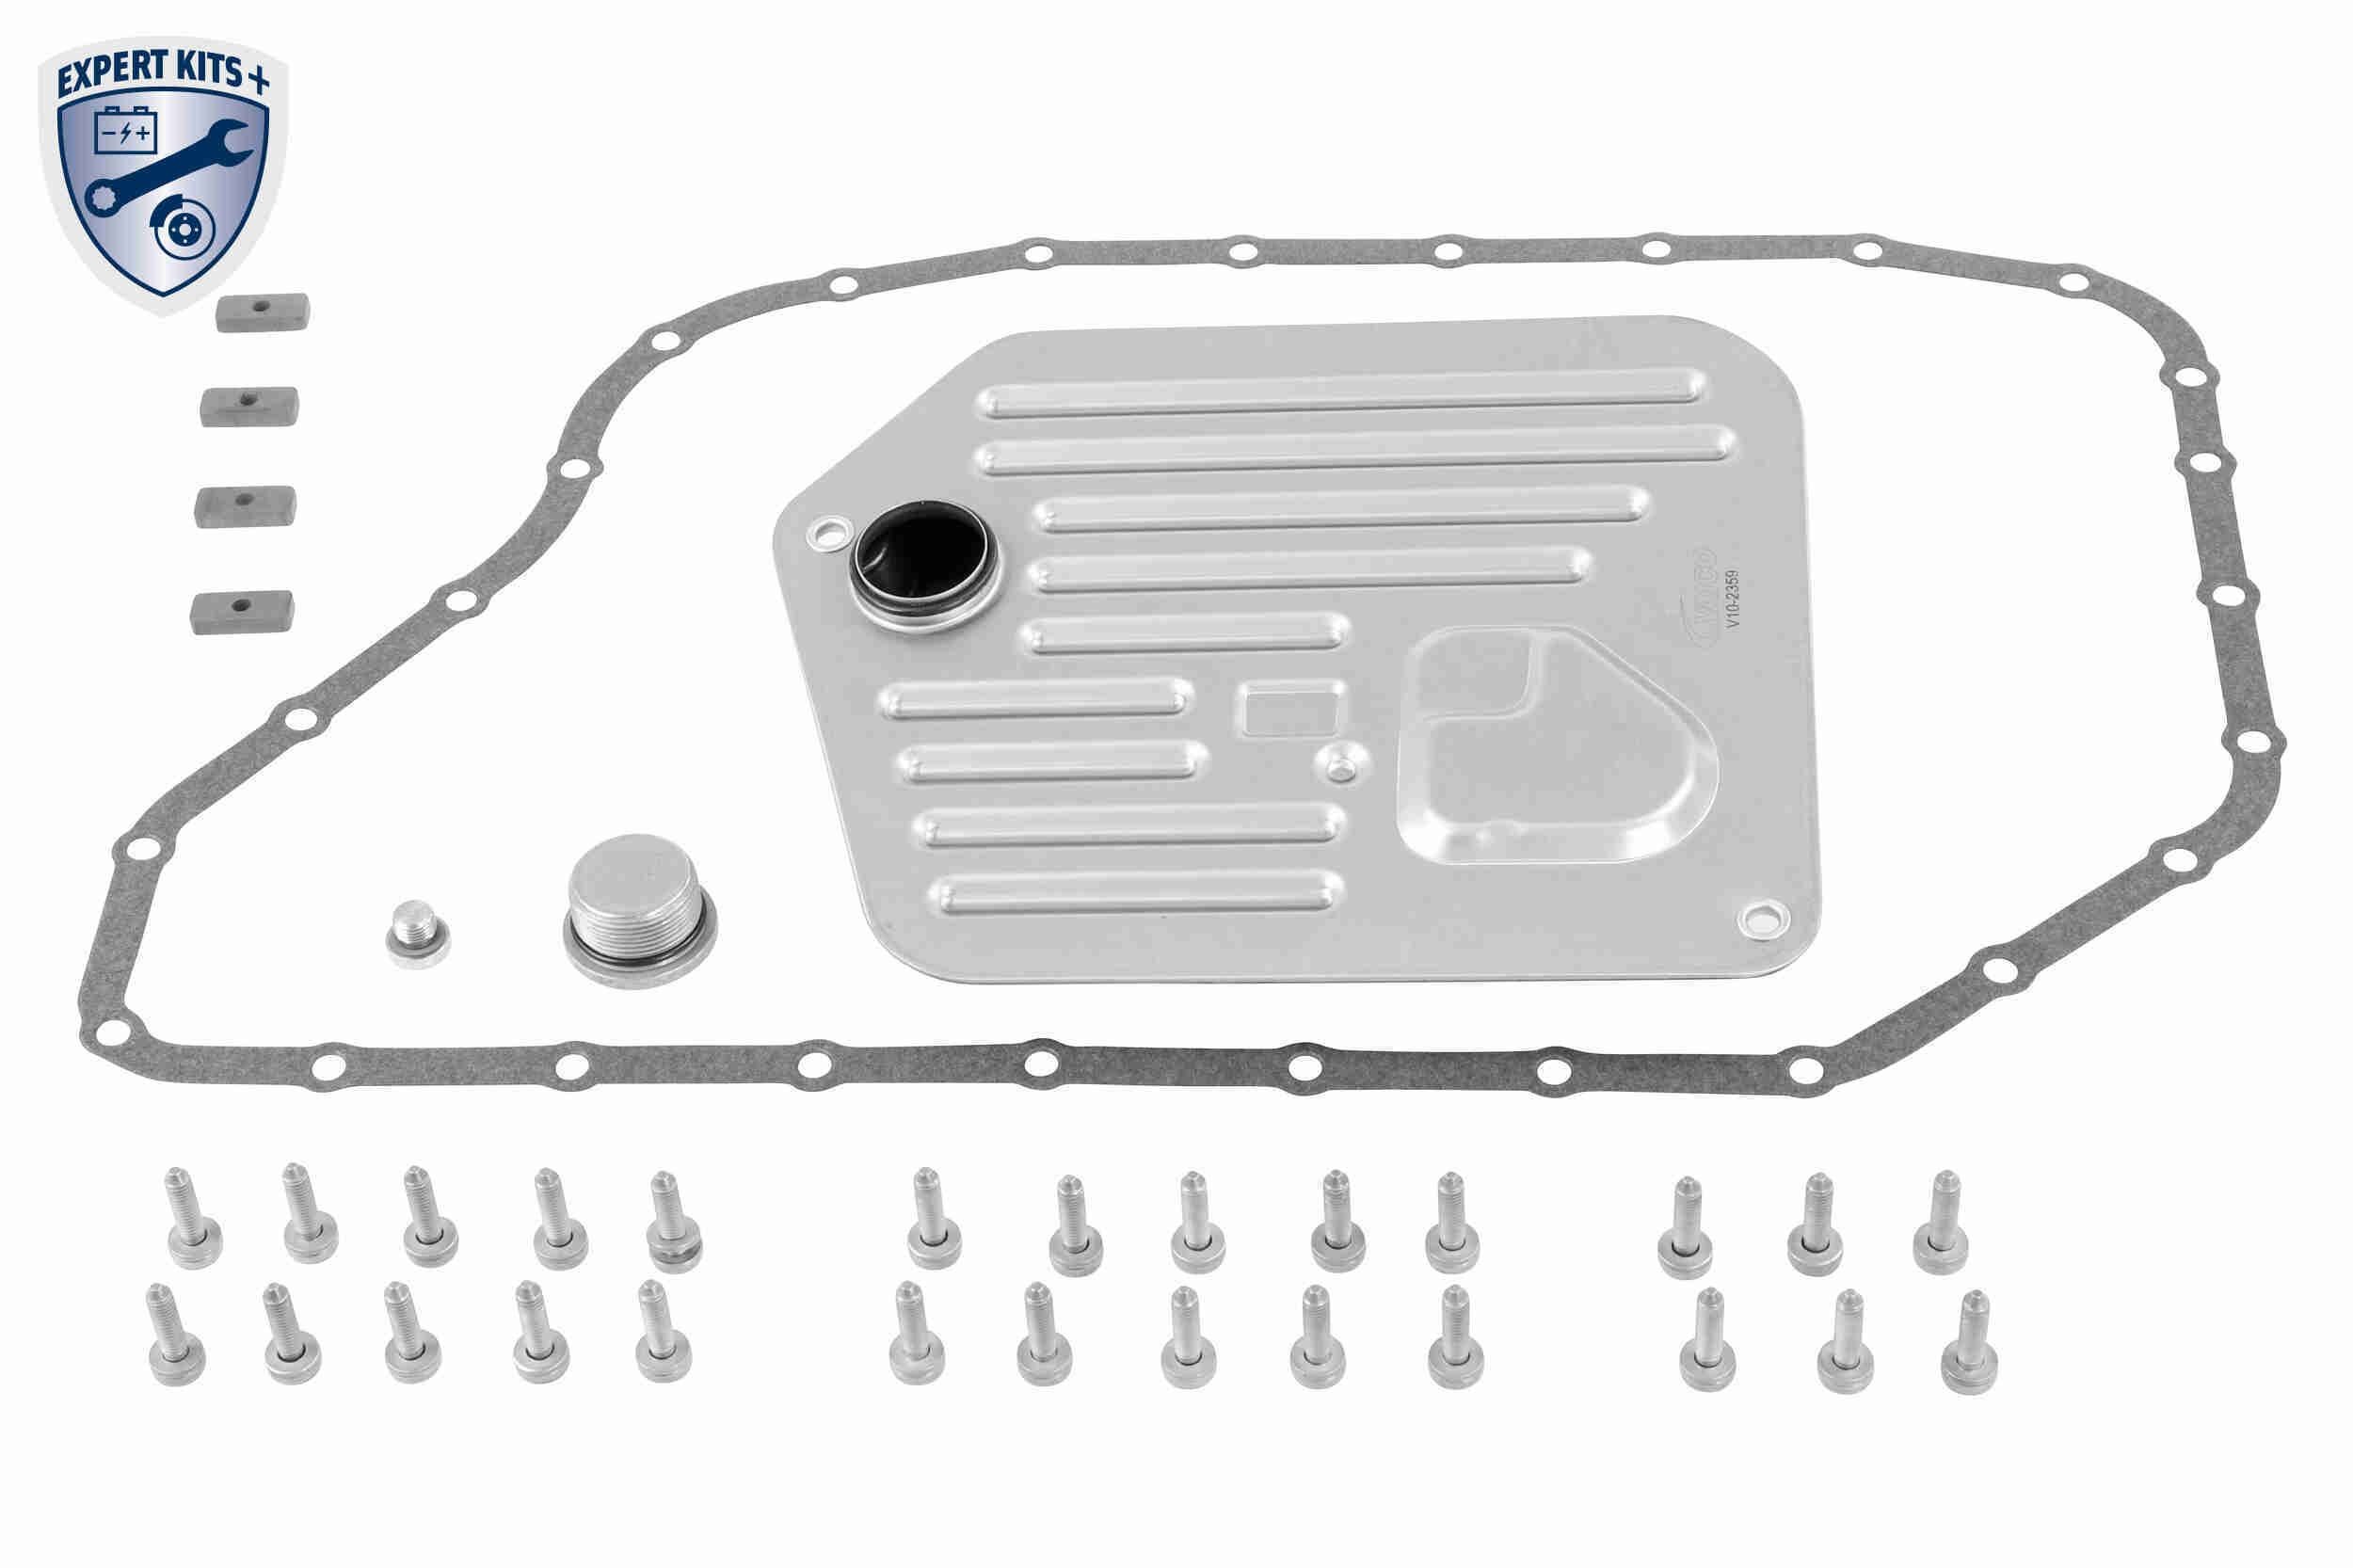 Filtro de caja de cambios de Transmisión para Audi A8 310bhp 4D 4.2 98 > 02 4D2 4D8 gasolina ADL